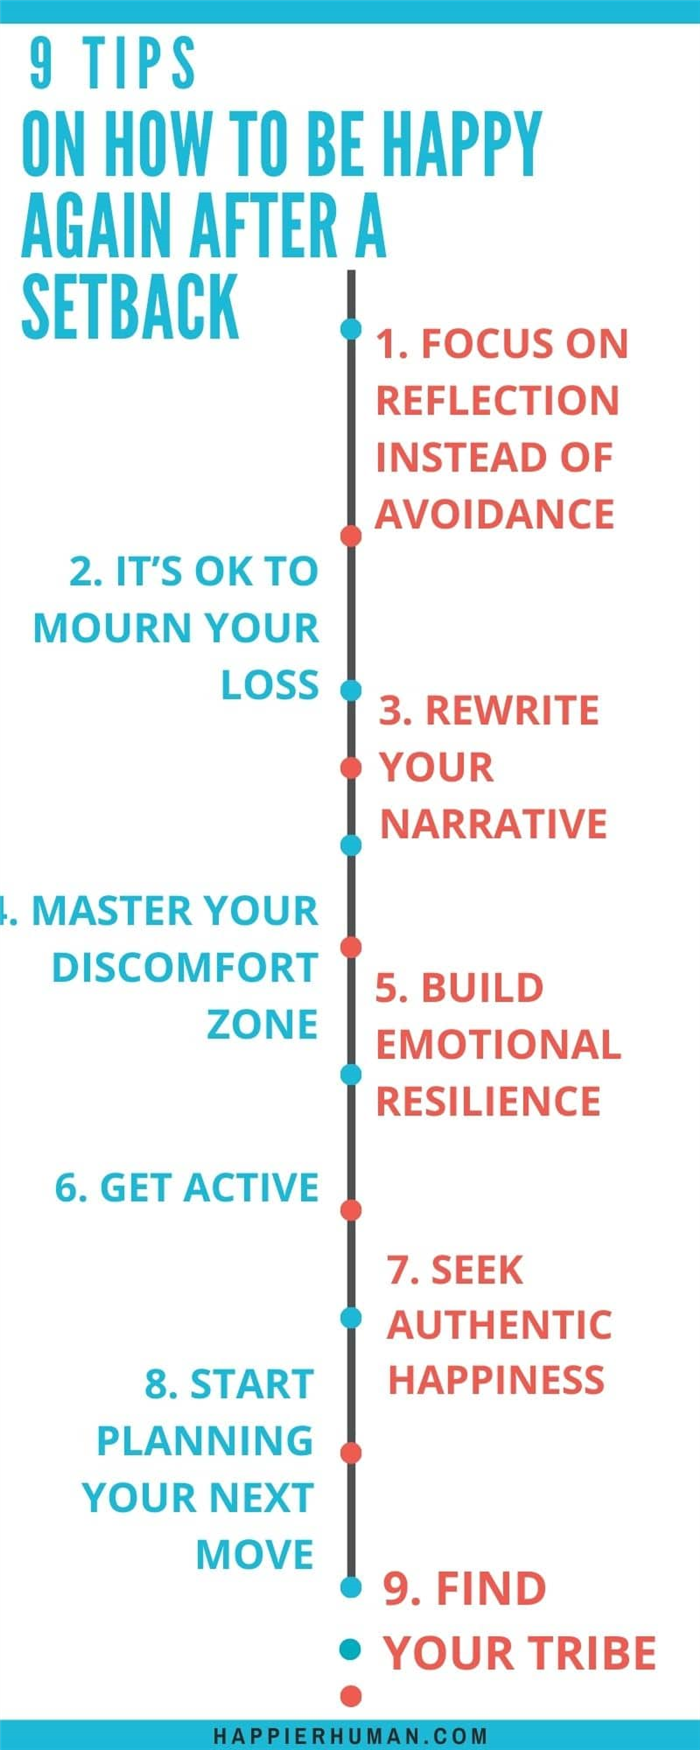 9 шагов, чтобы снова почувствовать себя счастливым после жизненных испытаний